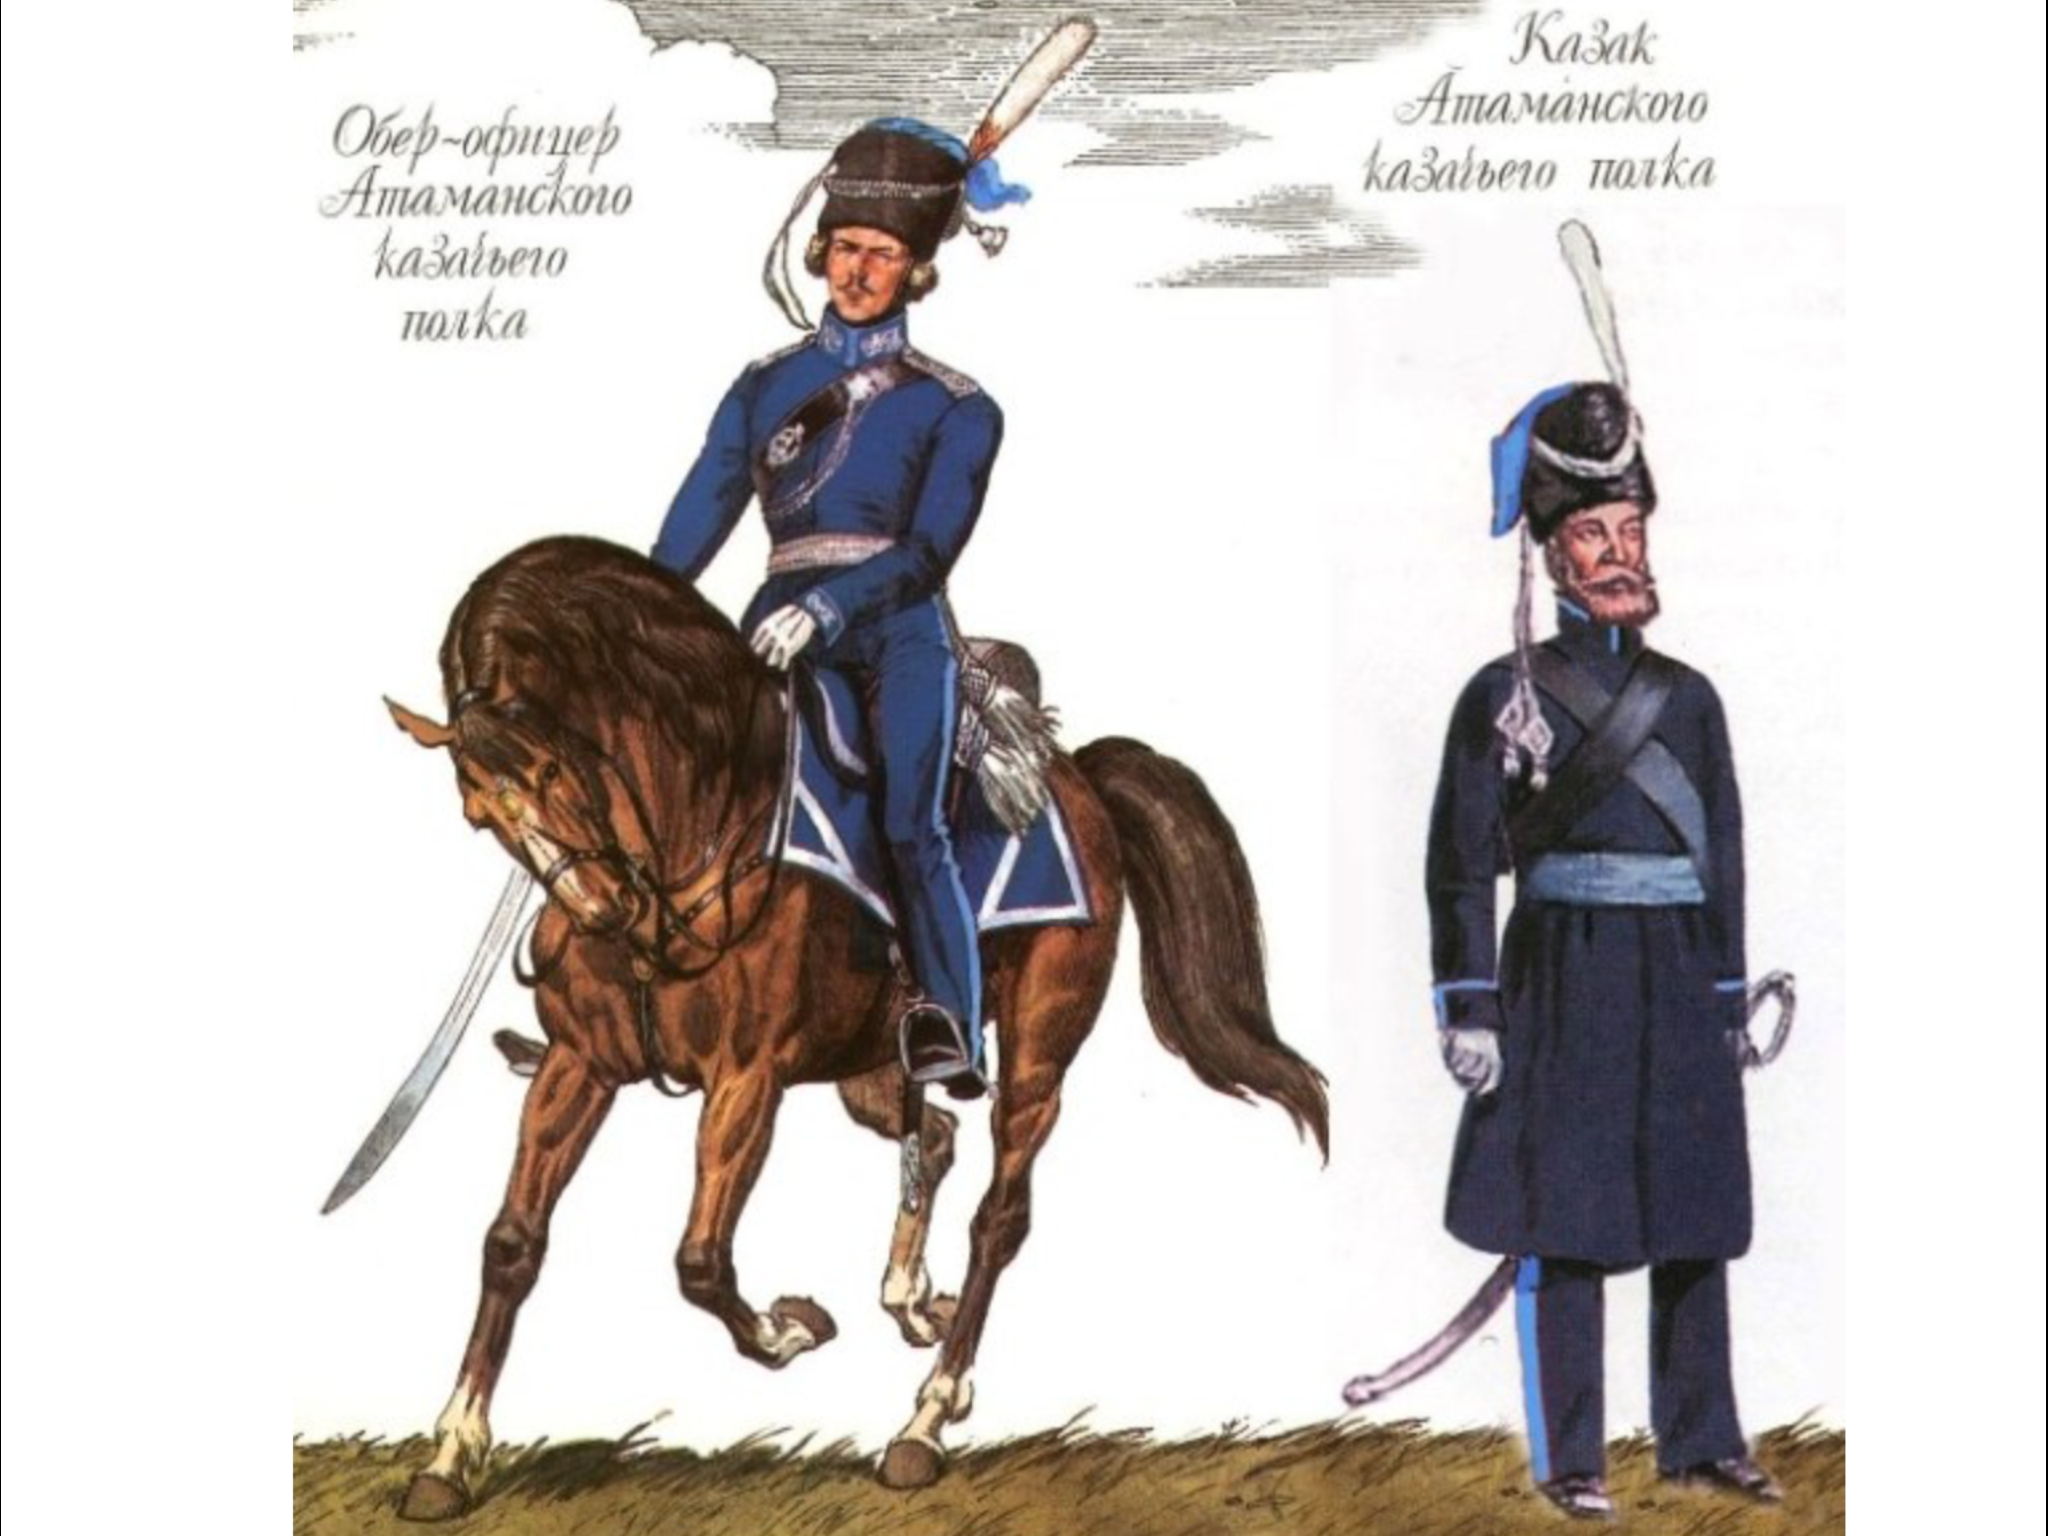 Атаманский казачий полк 1812